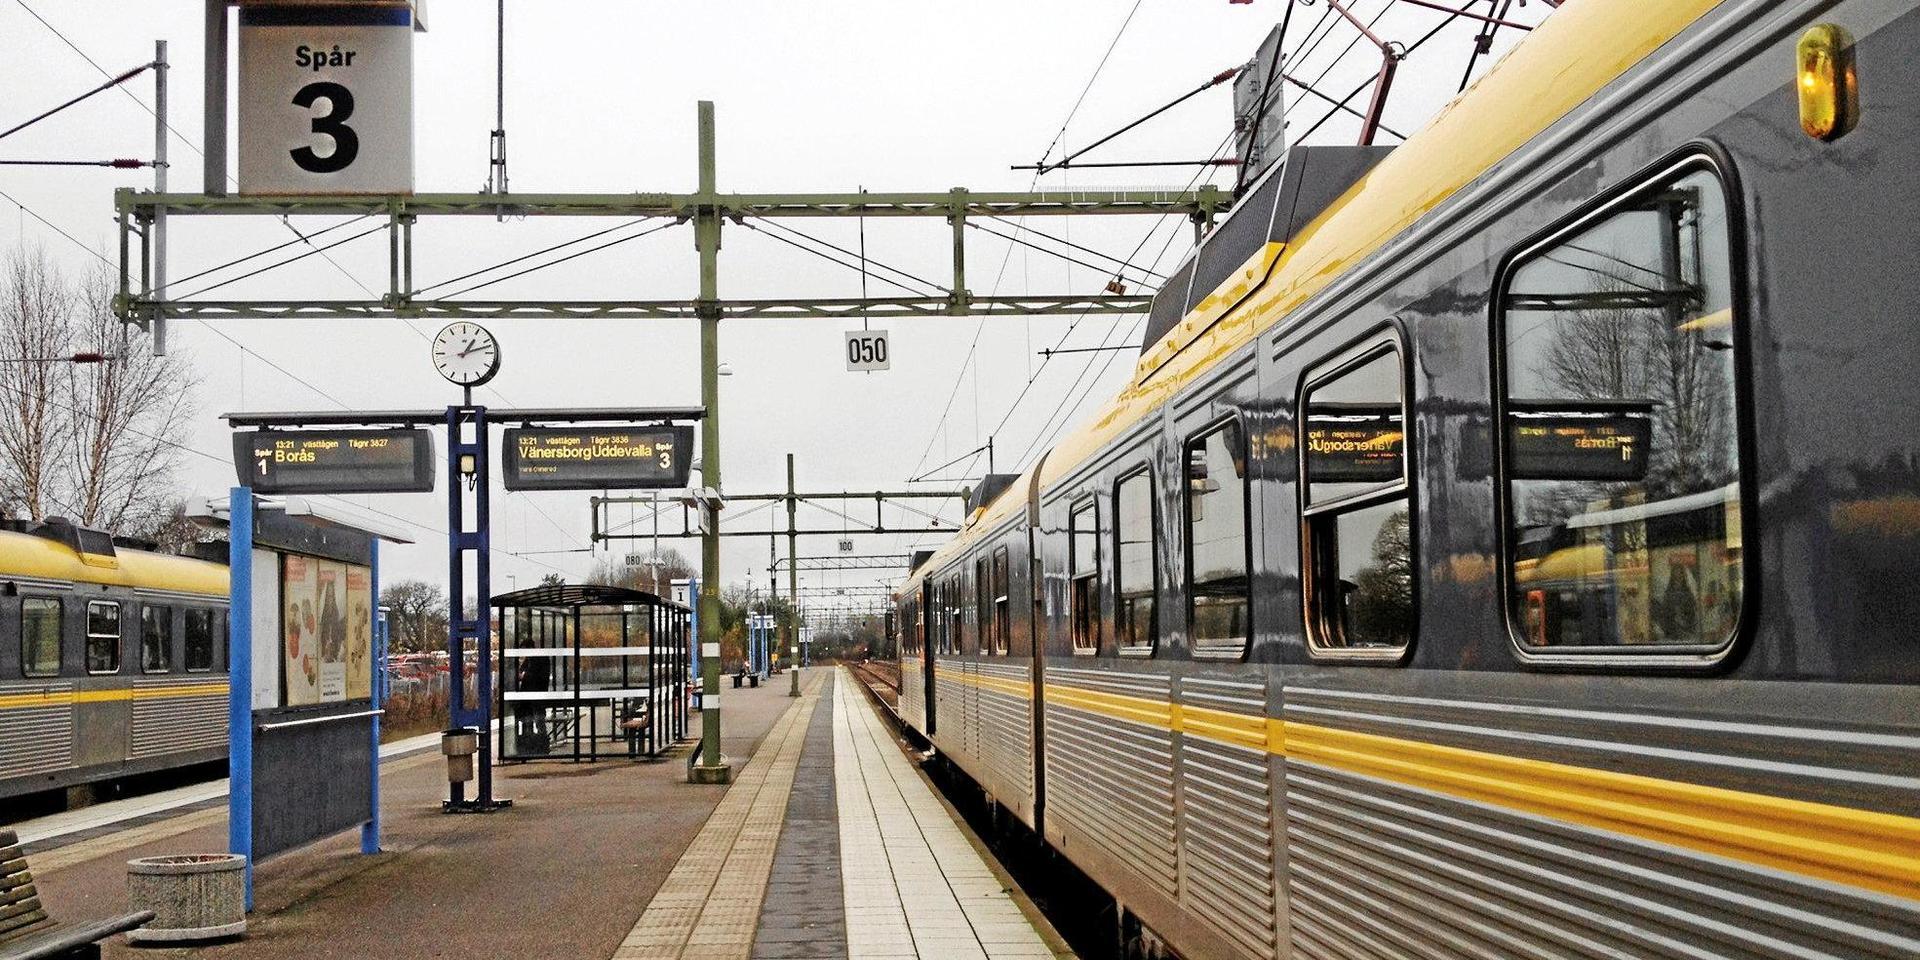 Gör järnvägen Uddevalla-Varberg till en huvudlinje, med korta uppehåll i den stora knutpunkten Herrljunga, föreslår Christer Wilhelmsson, ordförande i Järnvägsfrämjandet.